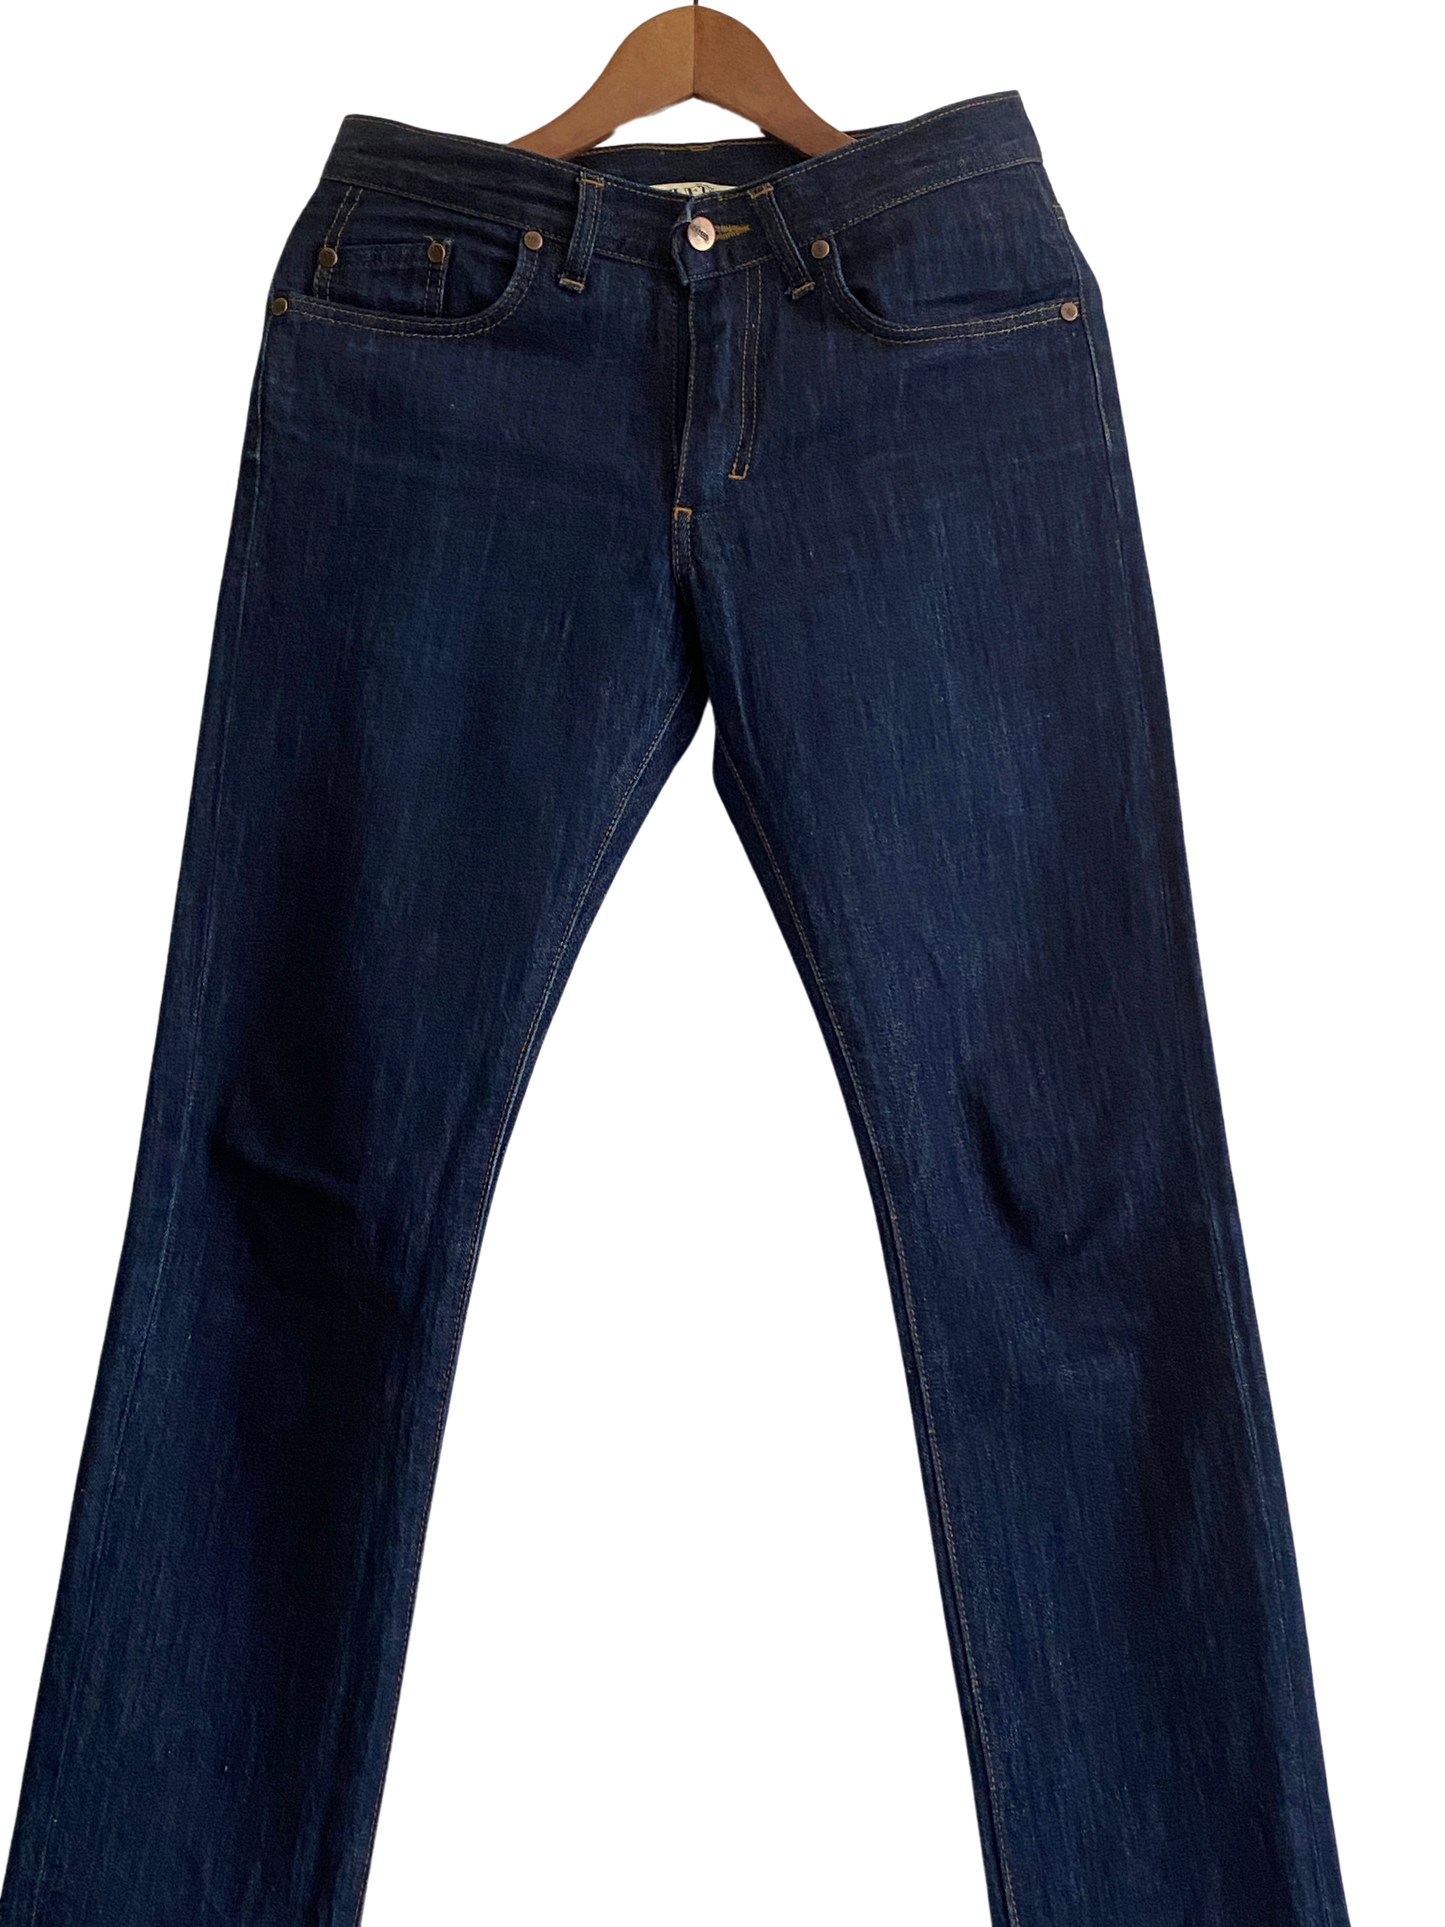 Brut Bio men's slim jeans - Augustin